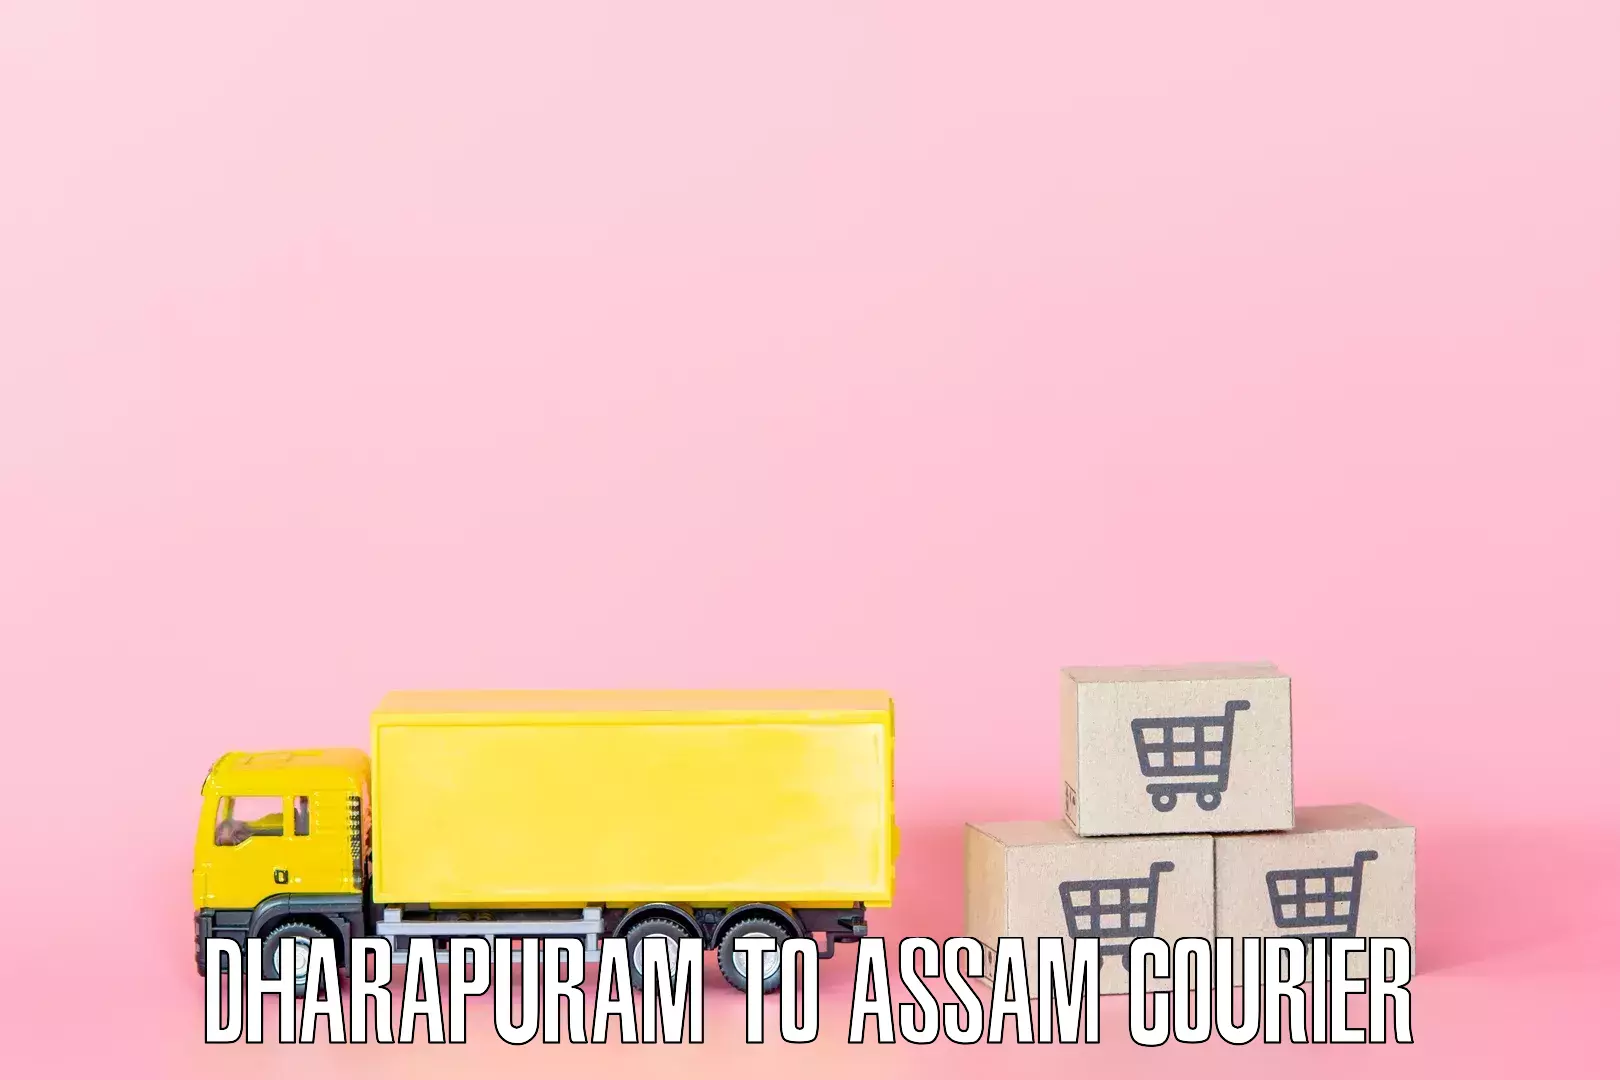 Furniture handling services Dharapuram to Hojai